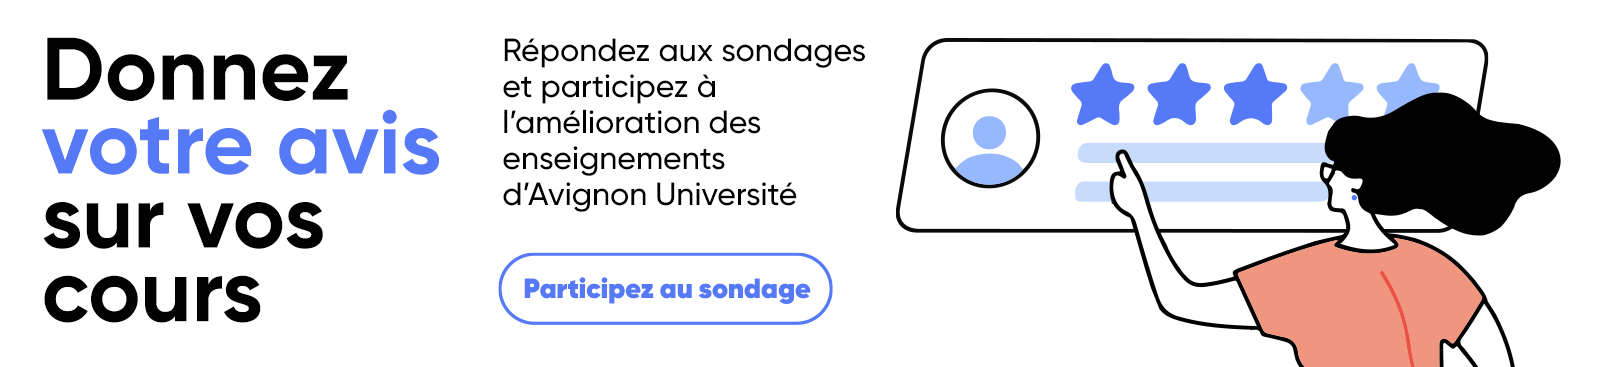 Répondez aux sondages et participez à l'amélioration des enseignements d'Avignon Université